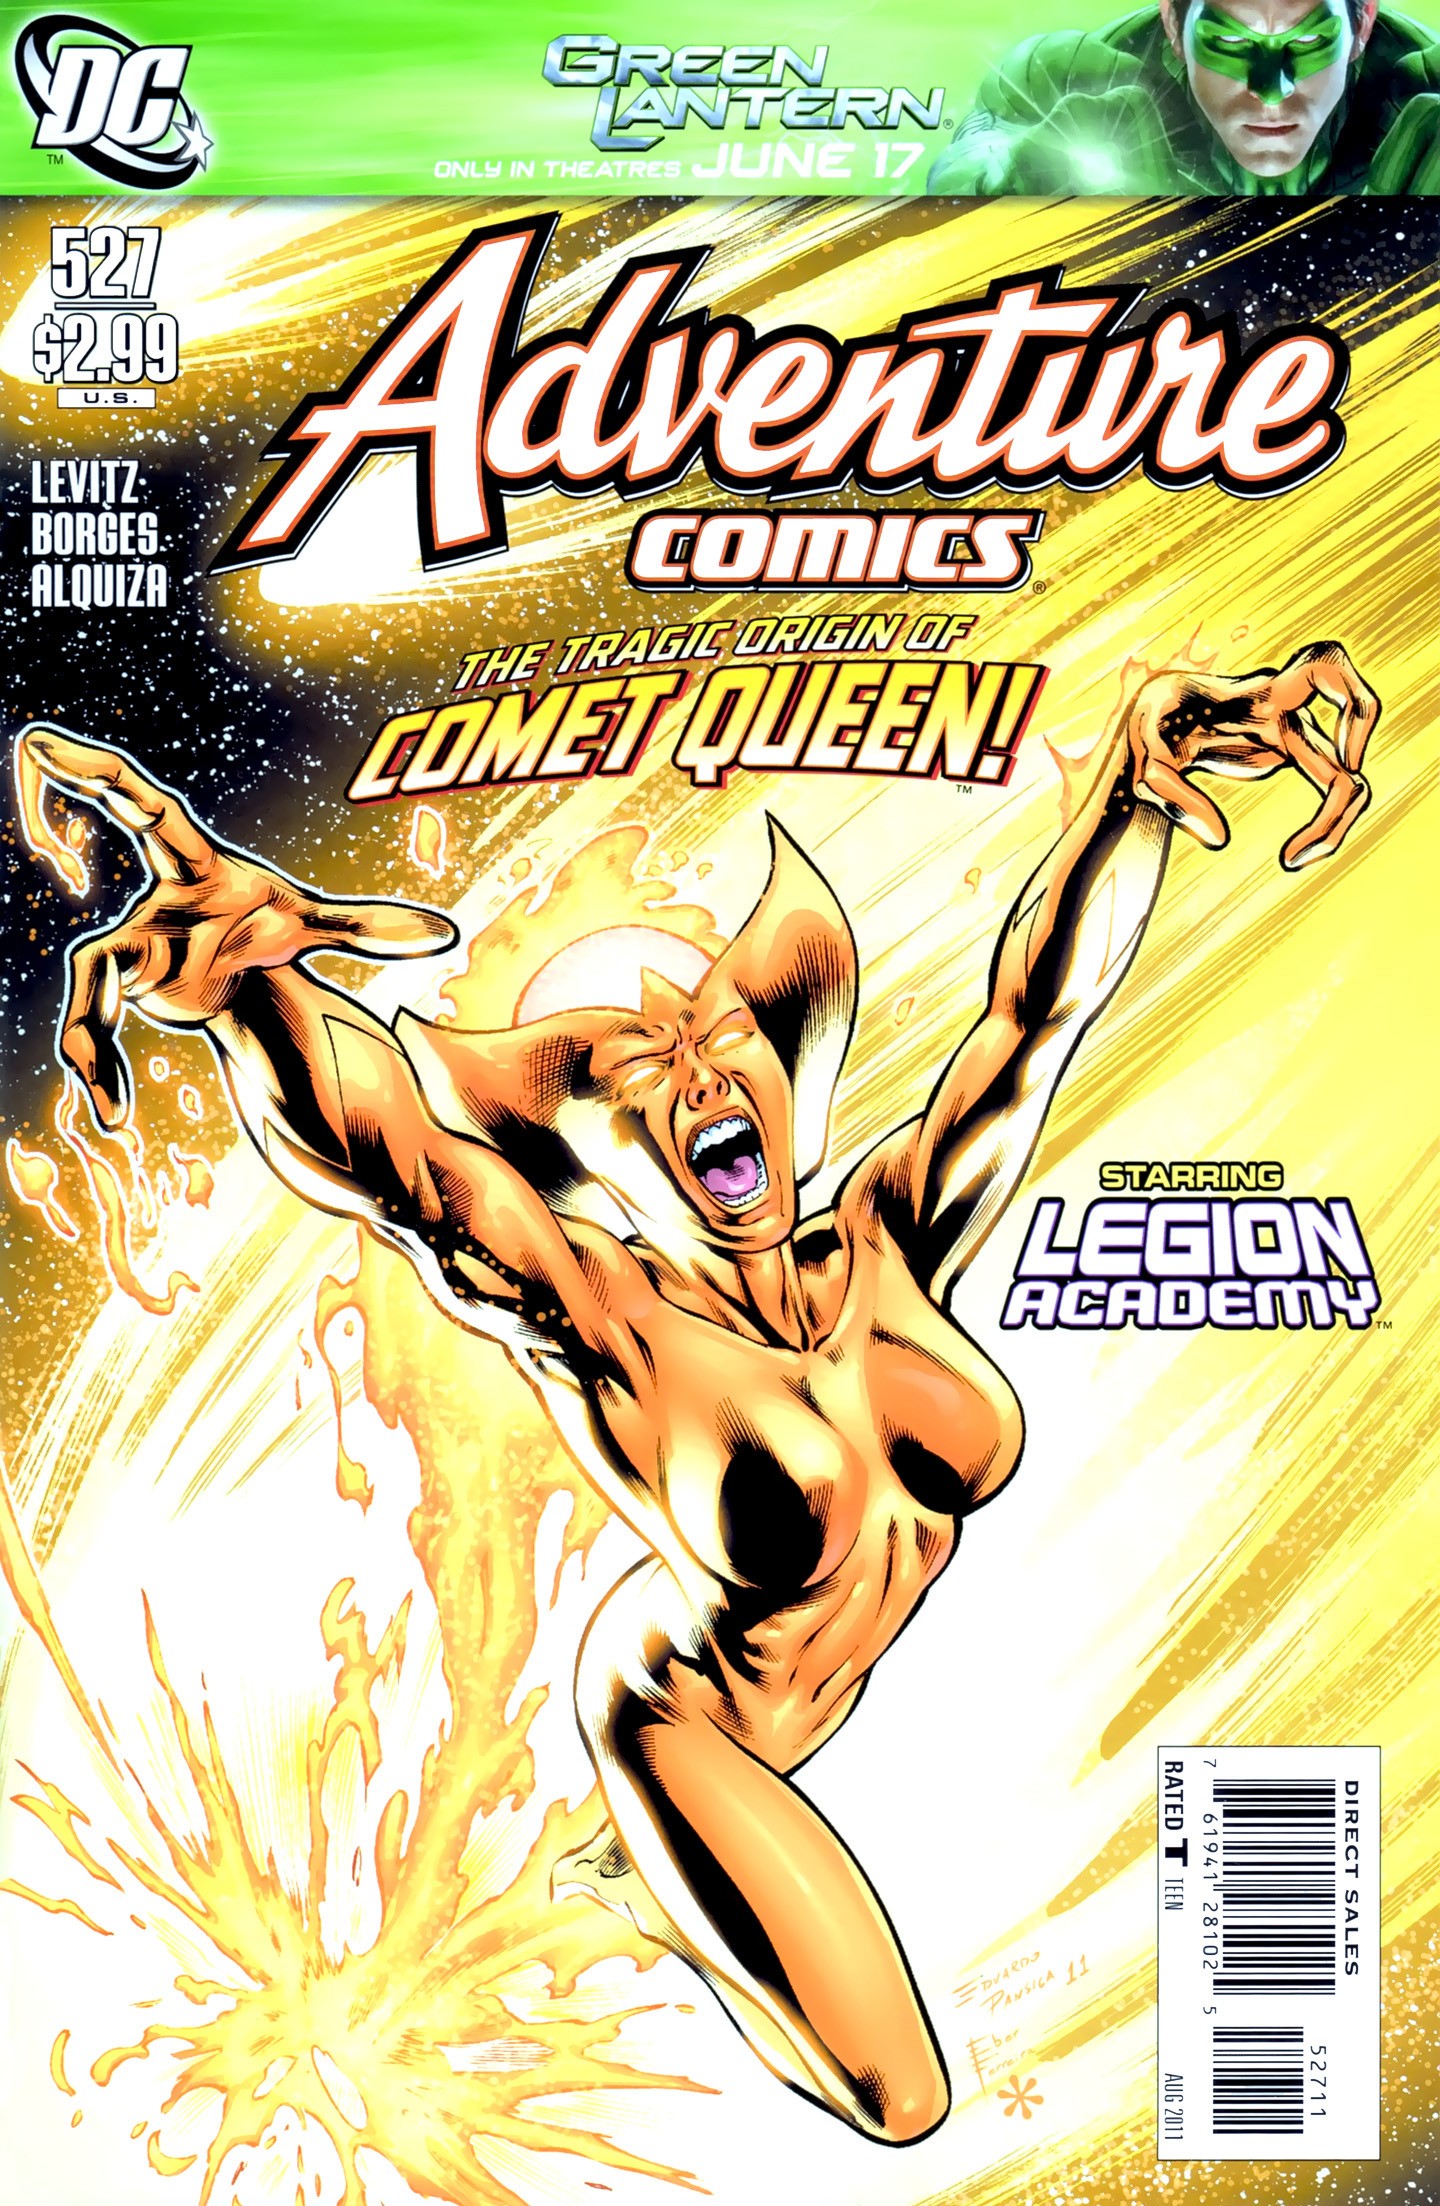 Adventure Comics Vol. 1 #527